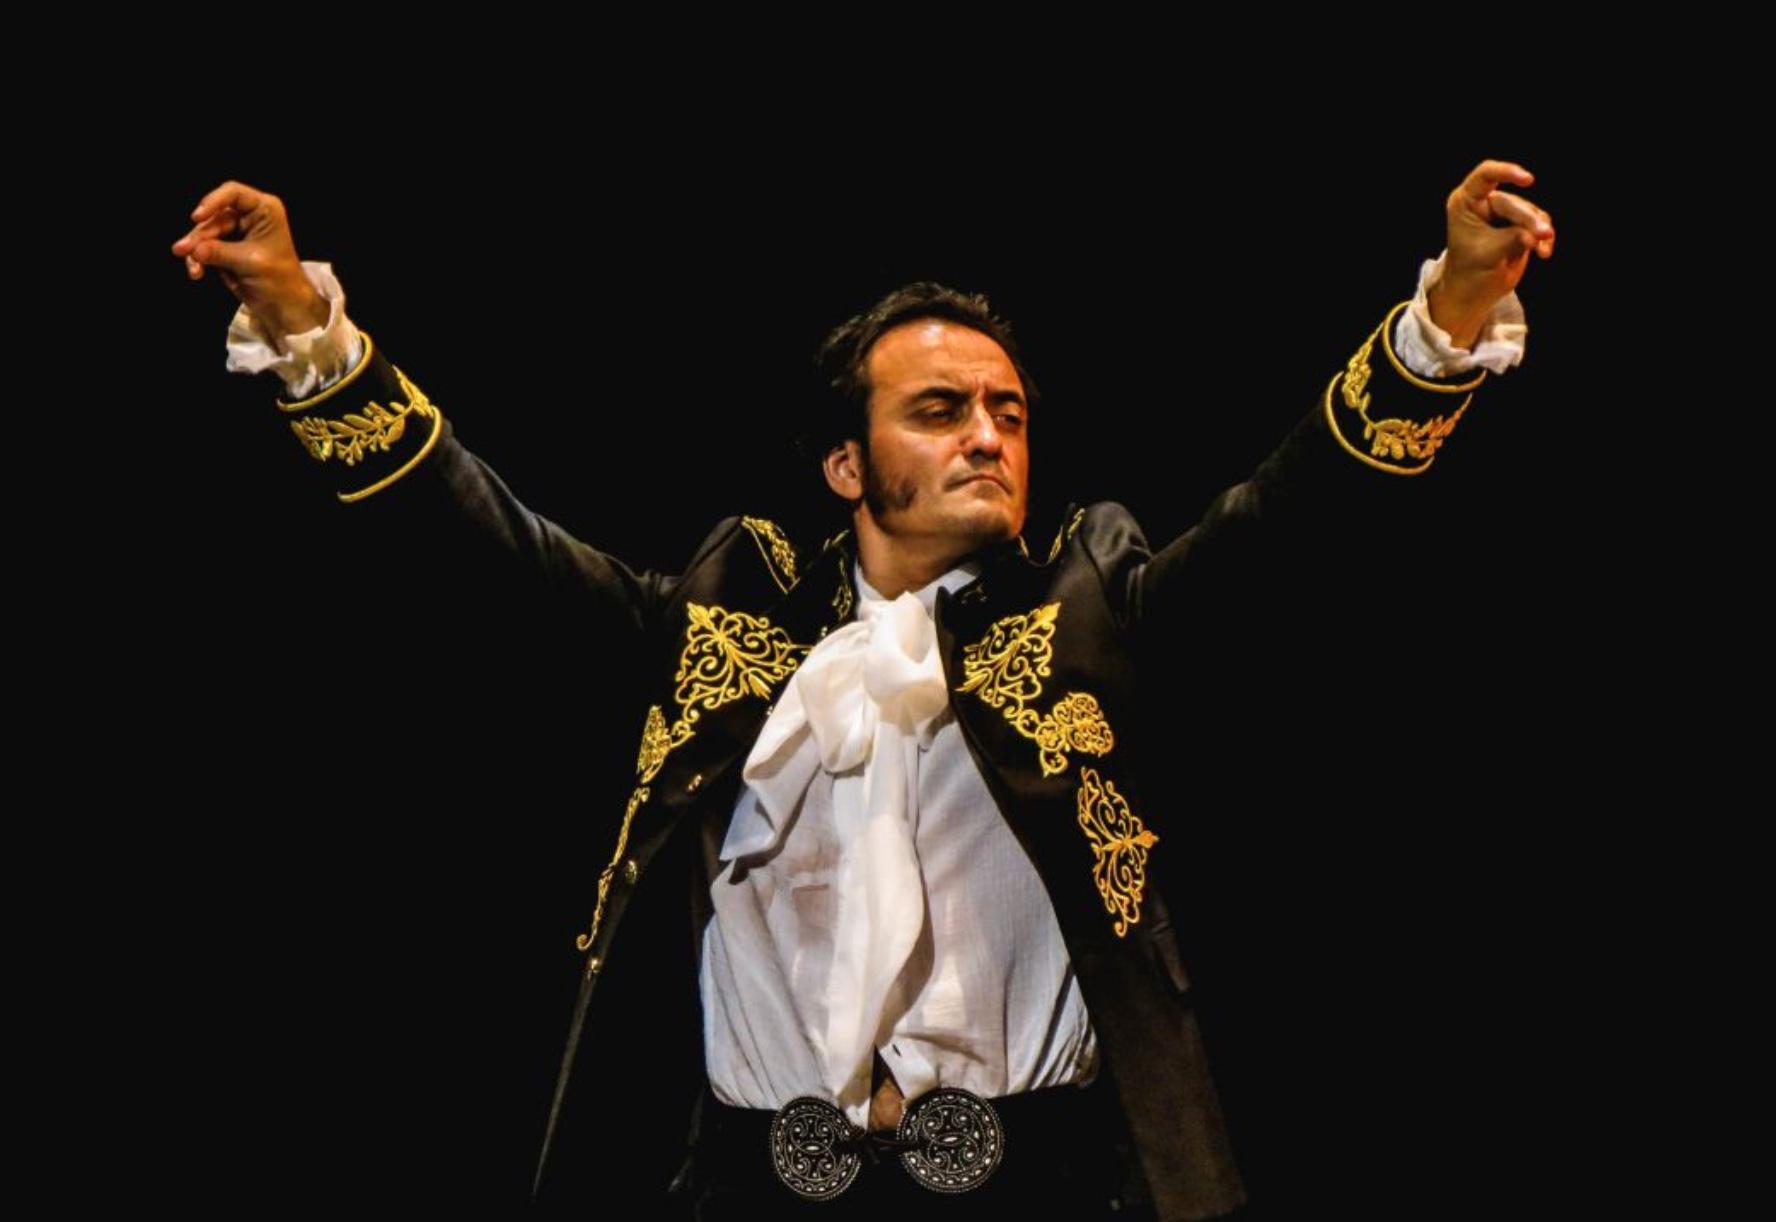 El bailaor flamenco David Morales celebra 40 años sobre las tablas con una gira por Colombia